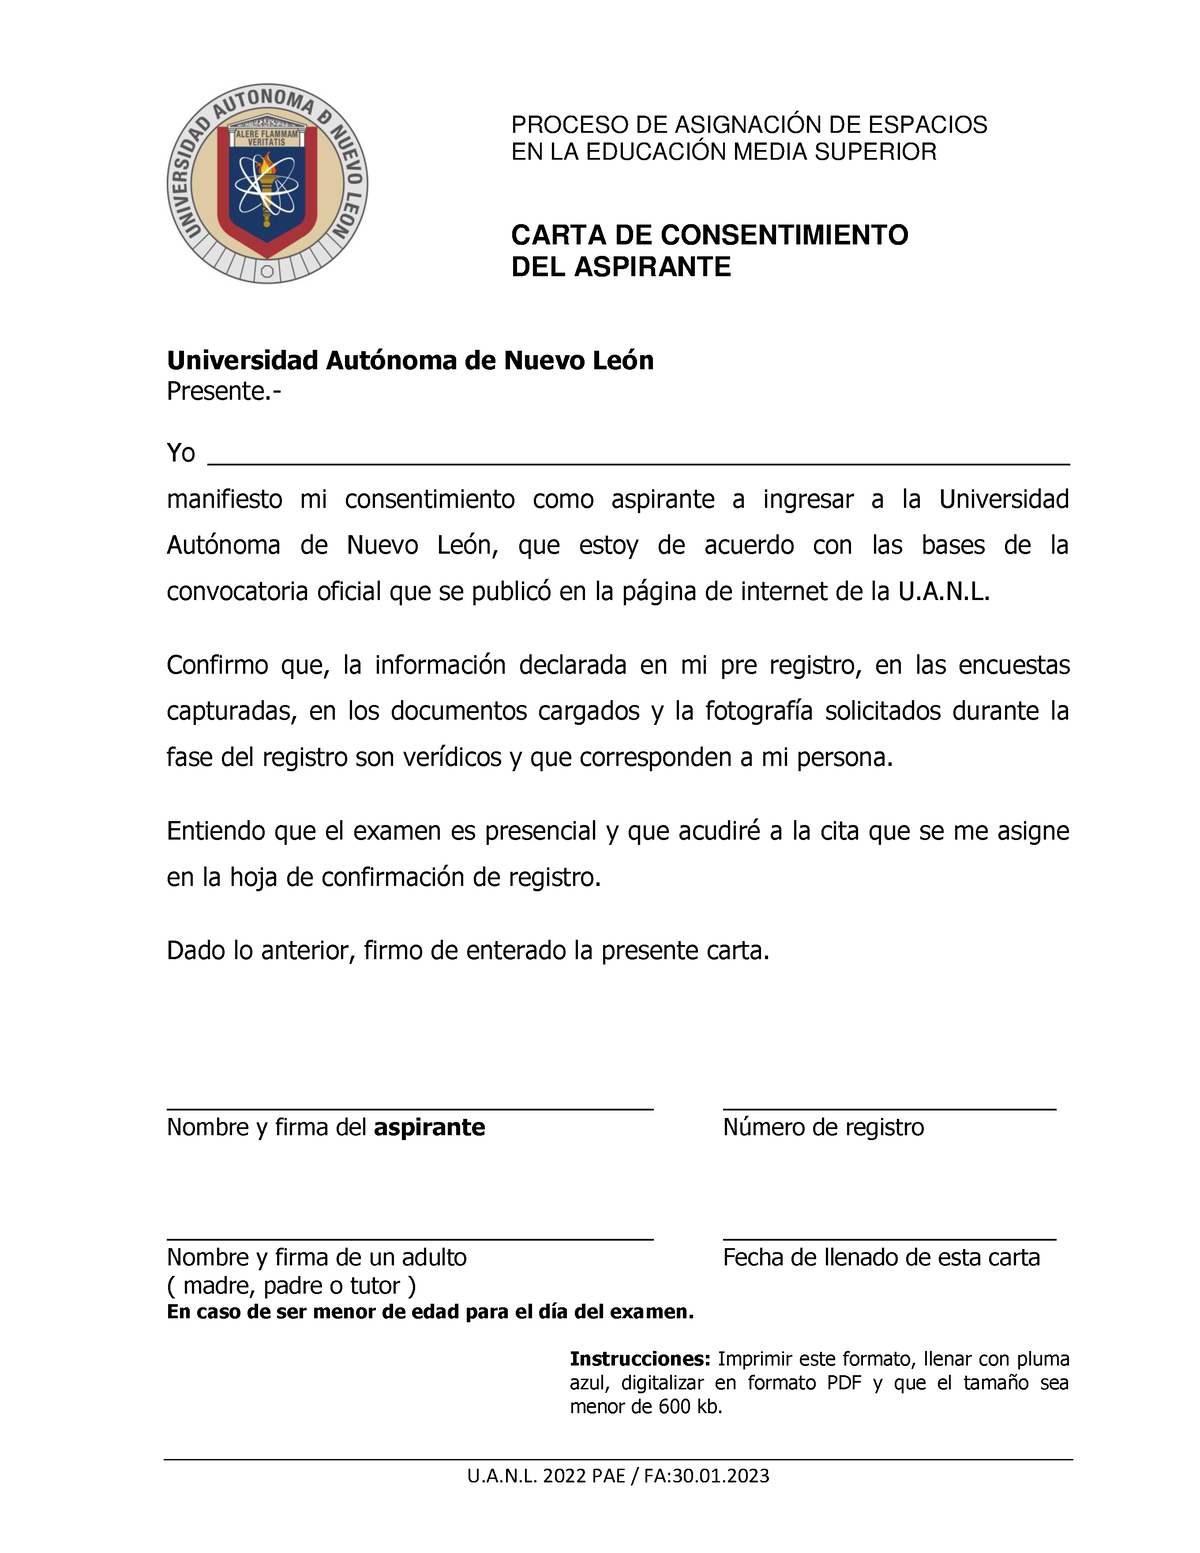 Carta De Consentimiento Del Aspirante Pae Uanl 2023 V1 Proceso De AsignaciÓn De Espacios En La 7525